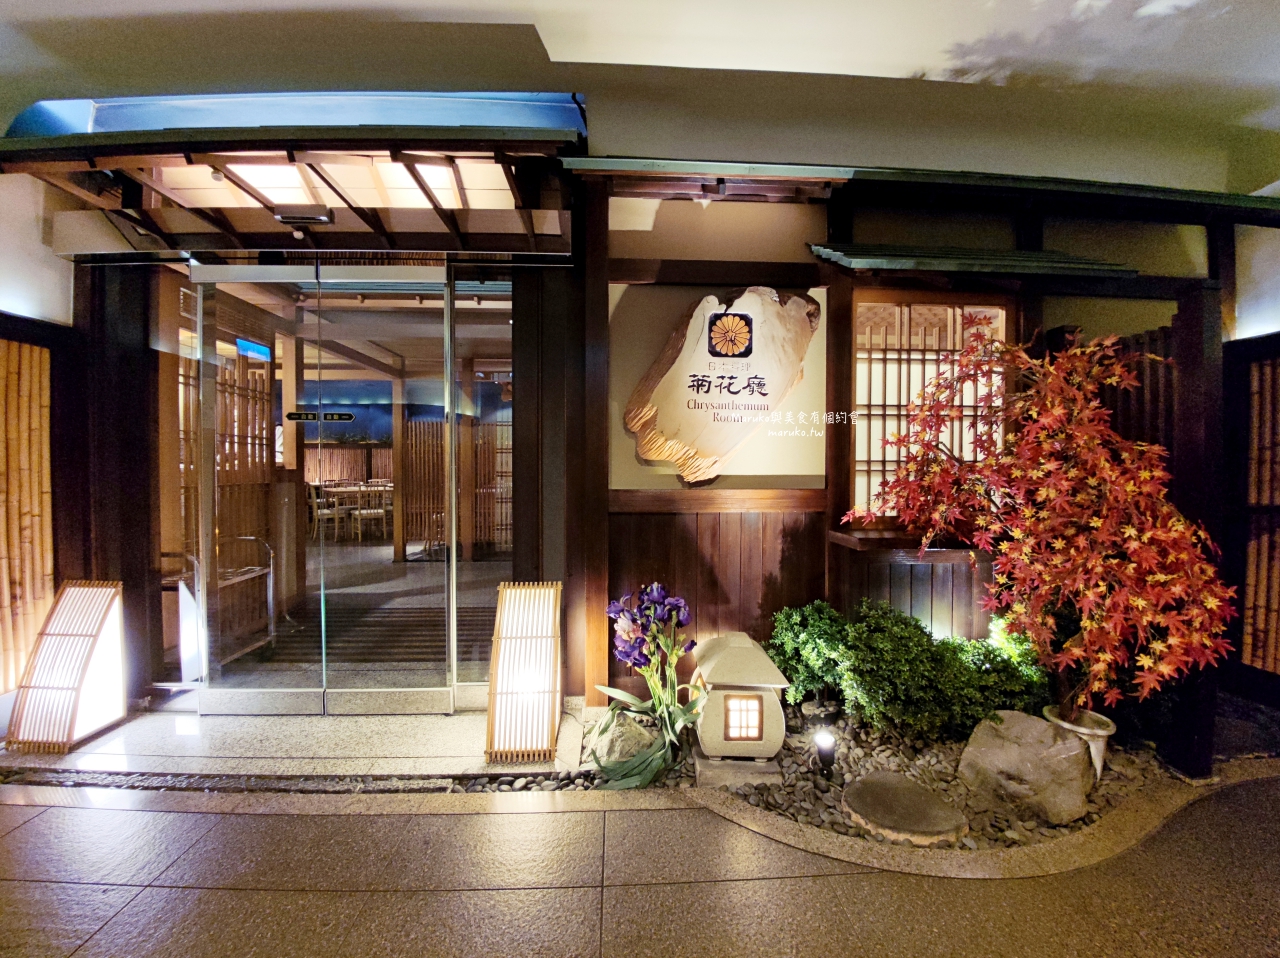 【台北】兄弟飯店 菊花廳日本料理 隱藏在飯店內的日式和風便當 會議便當推薦 @Maruko與美食有個約會